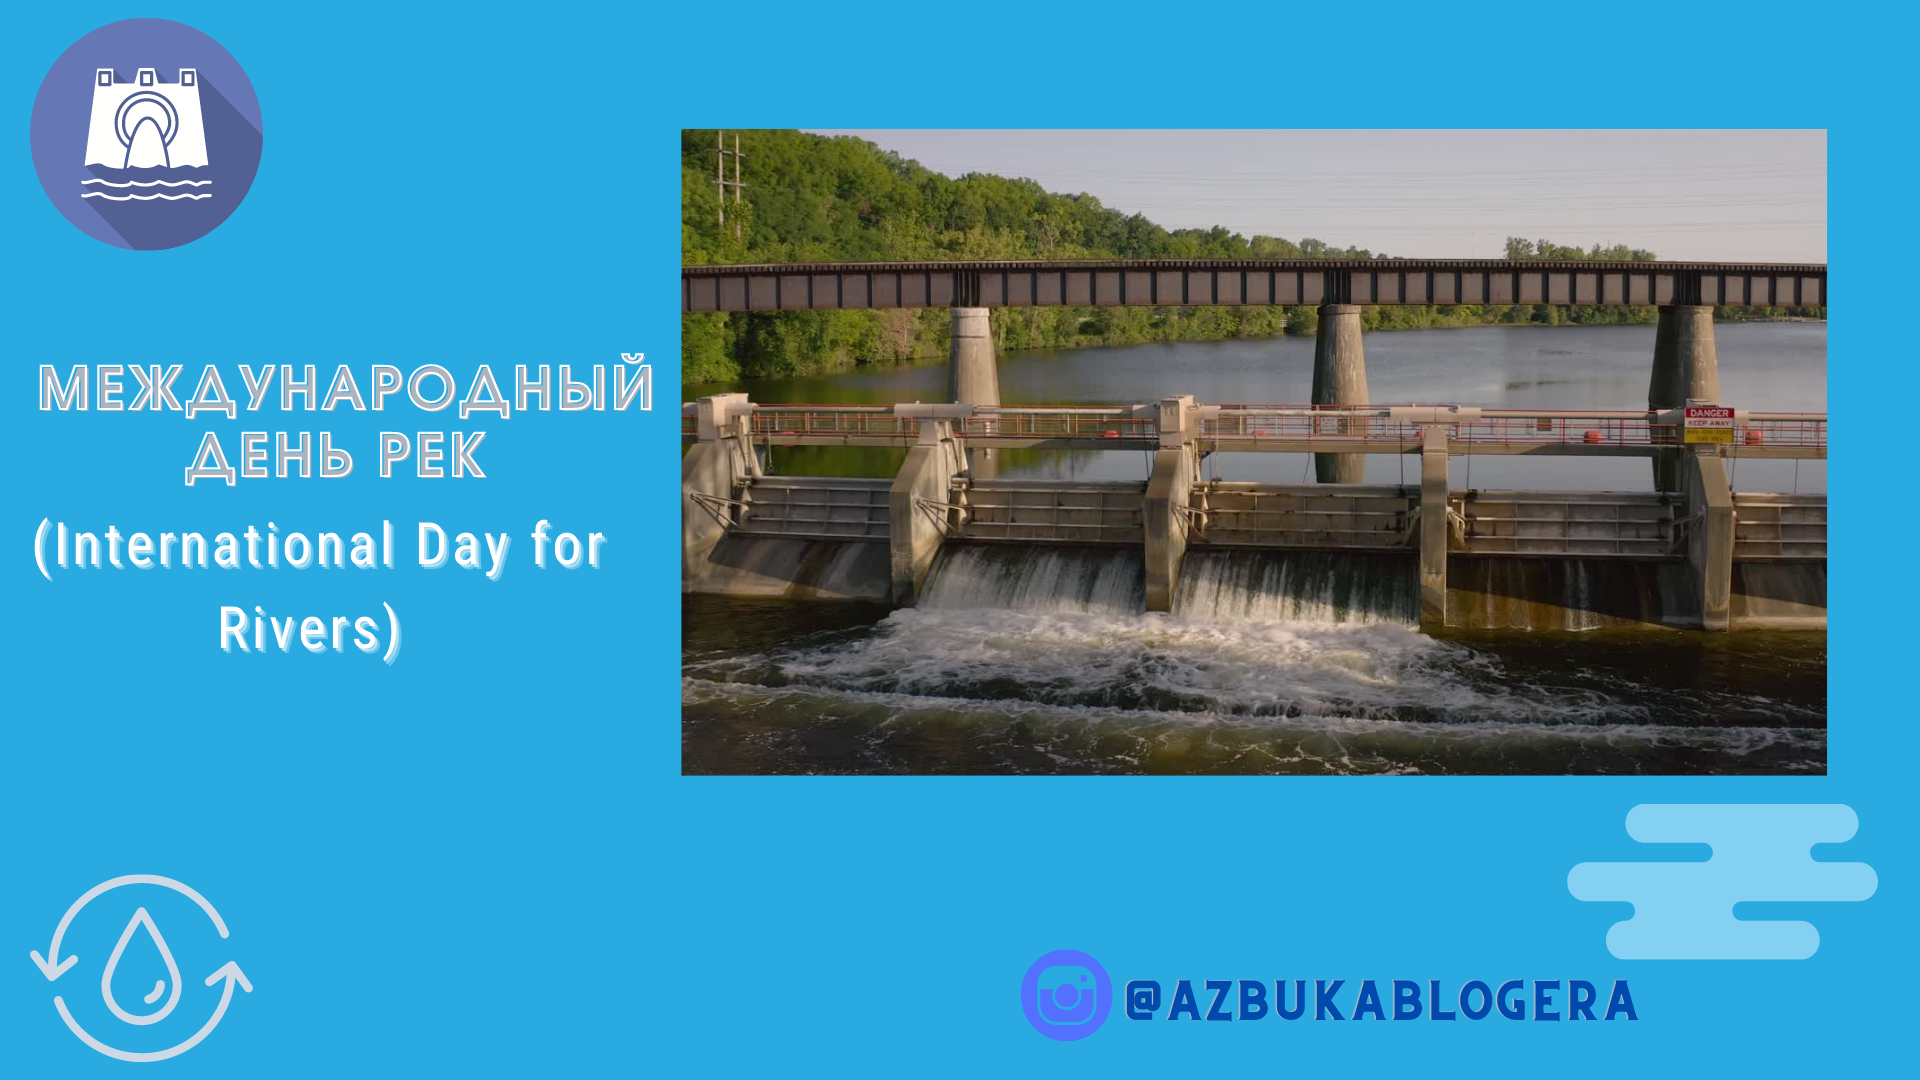 Международный день рек (International Day for Rivers) Сырдарья. Всемирный день рек